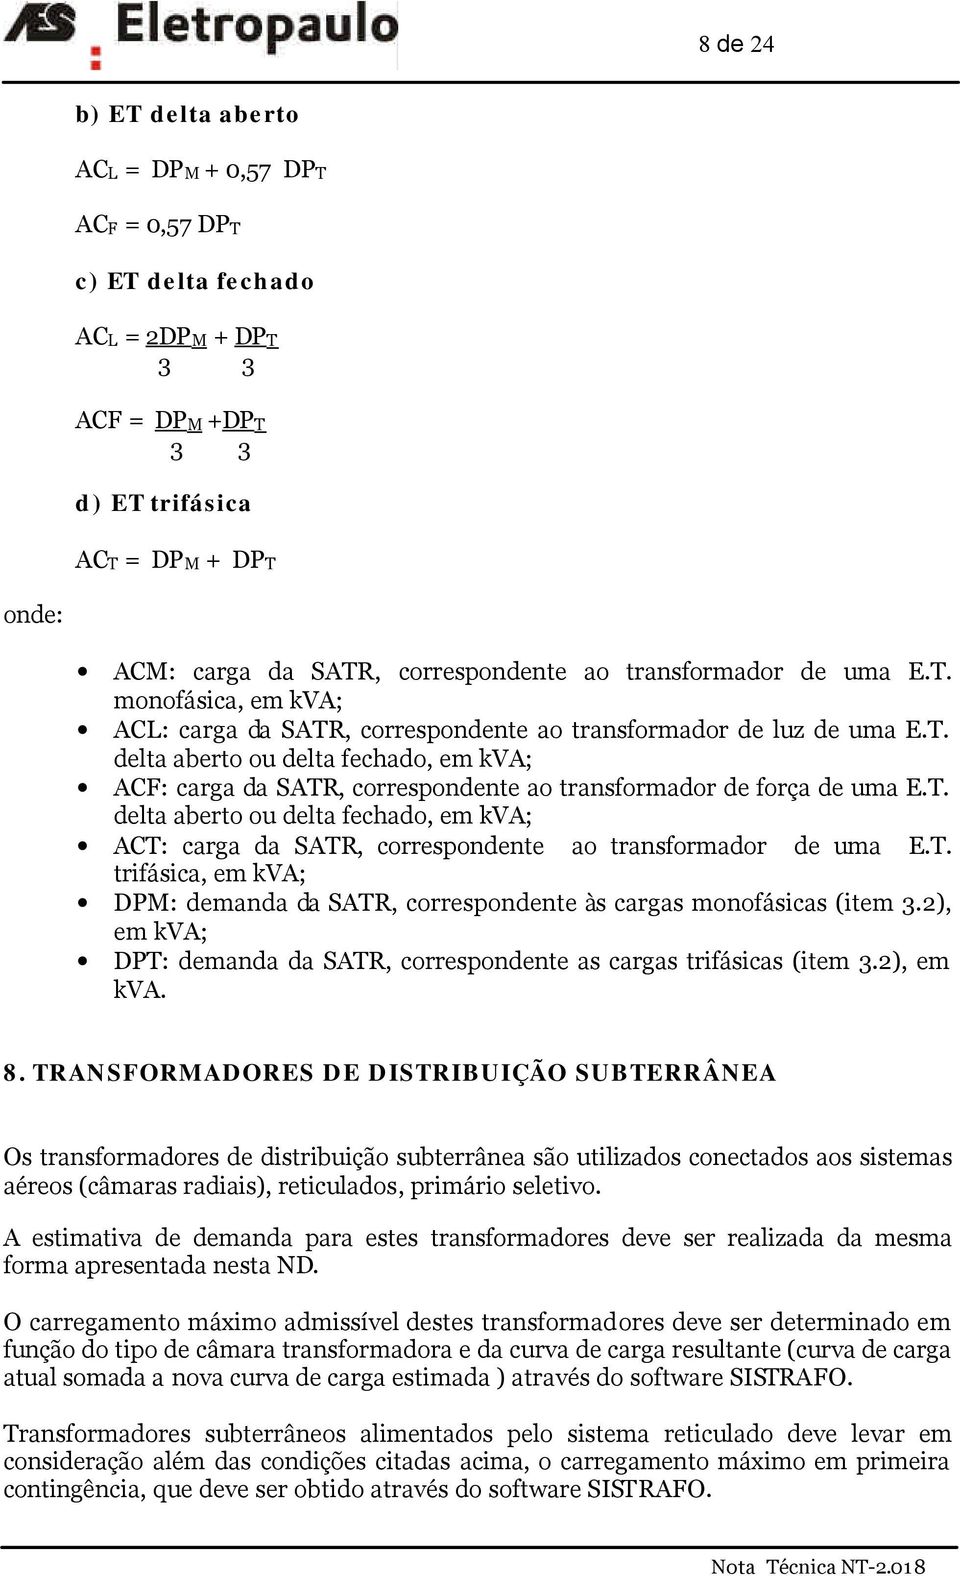 T. delta aberto ou delta fechado, em kva; AT: carga da SATR, correspondente ao transformador de uma E.T. trifásica, em kva; DPM: demanda da SATR, correspondente às cargas monofásicas (item 3.